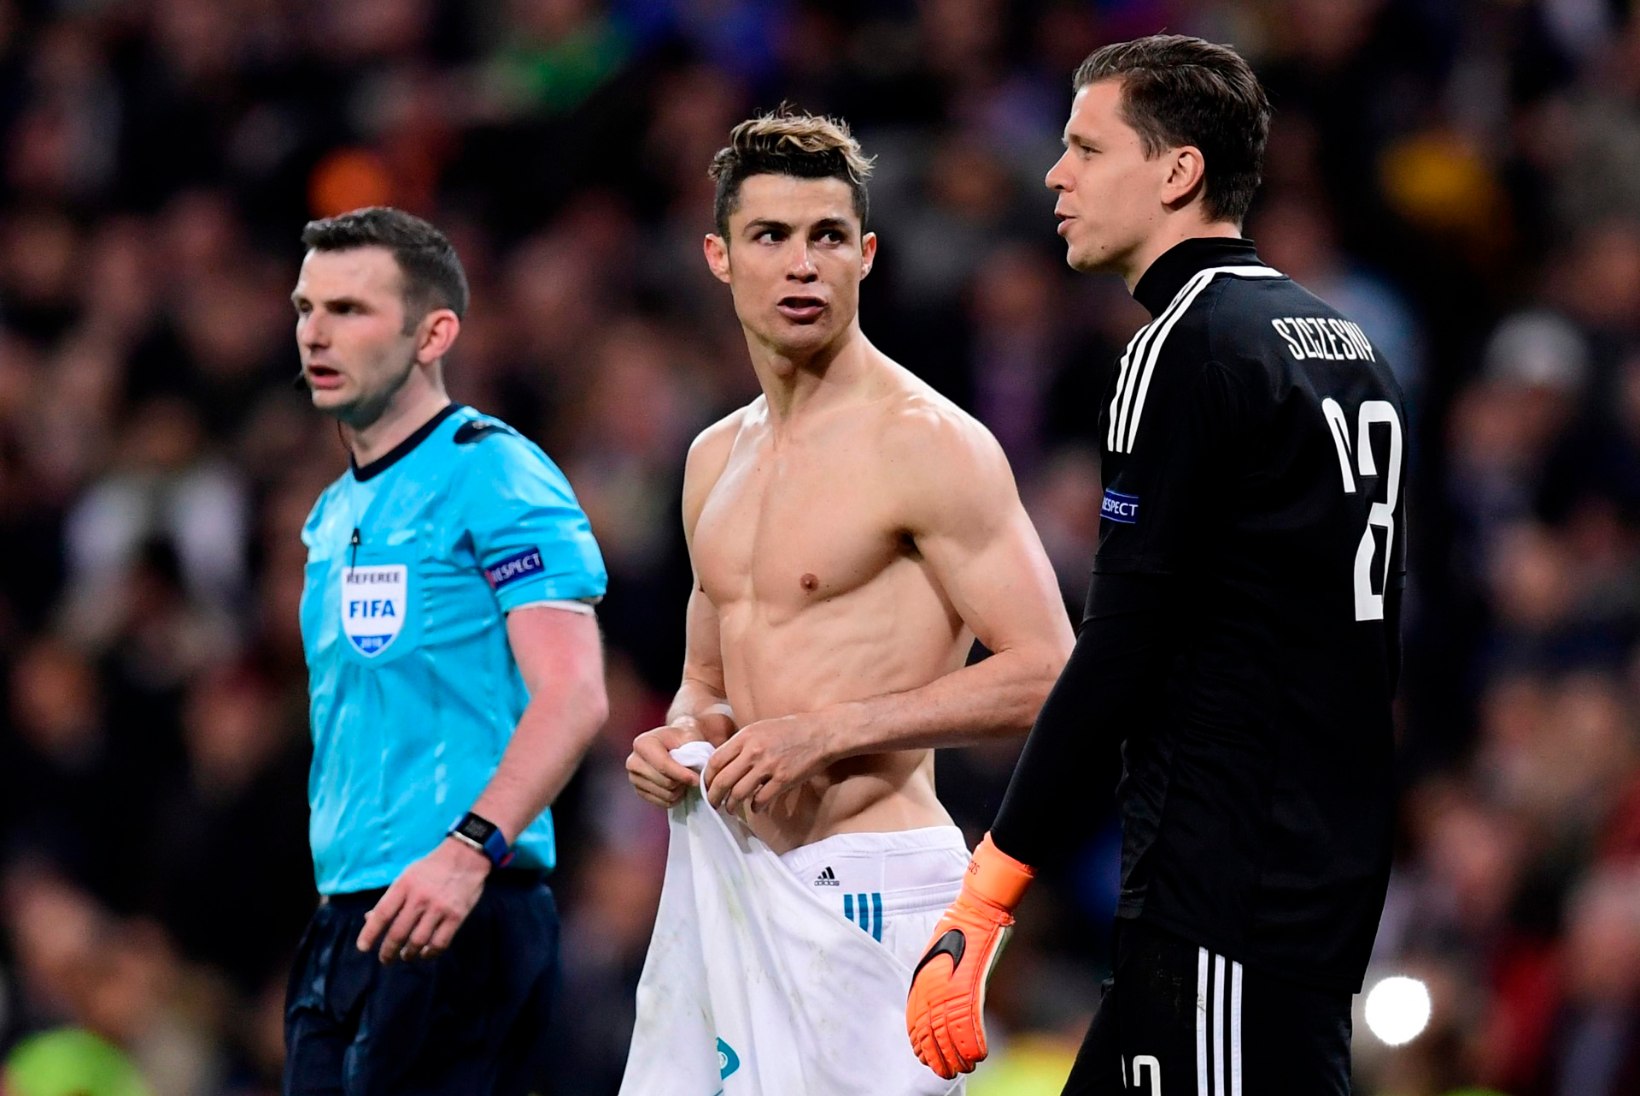 SÄRISEVALT KUUM GALERII | Lase silmal puhata piltidel, kus Ronaldo särki ei kanna!